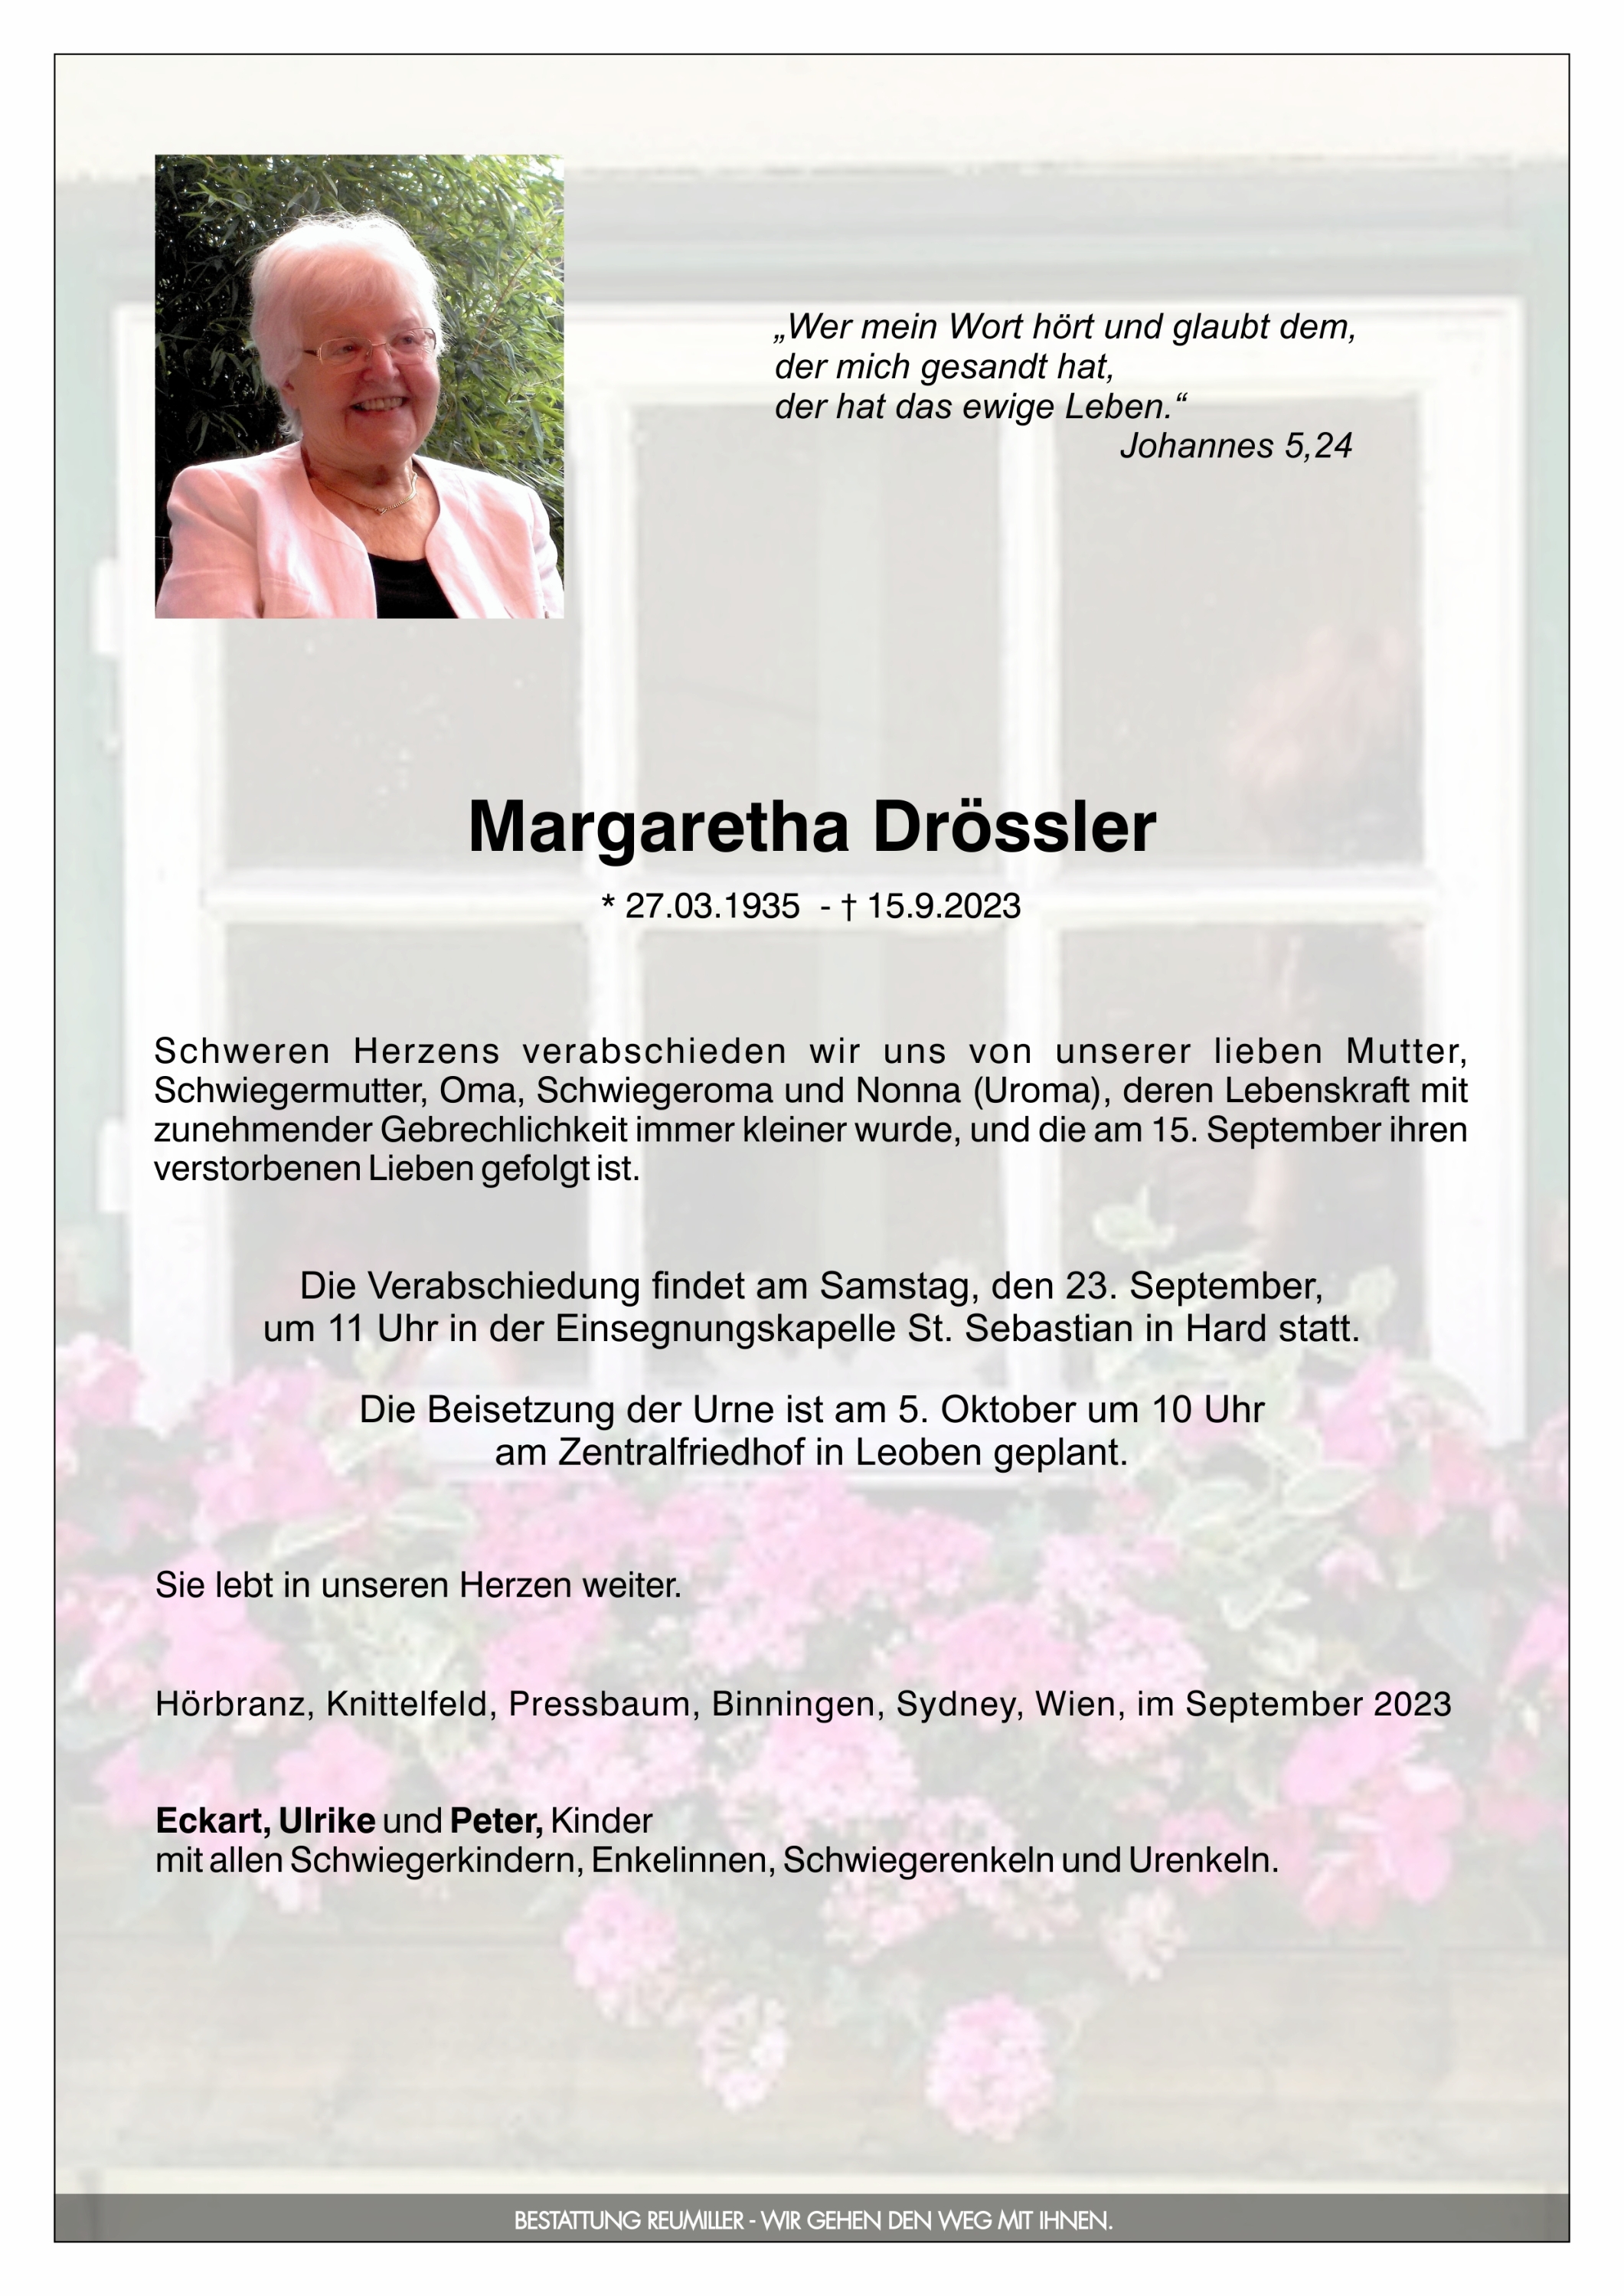 Margaretha Drössler